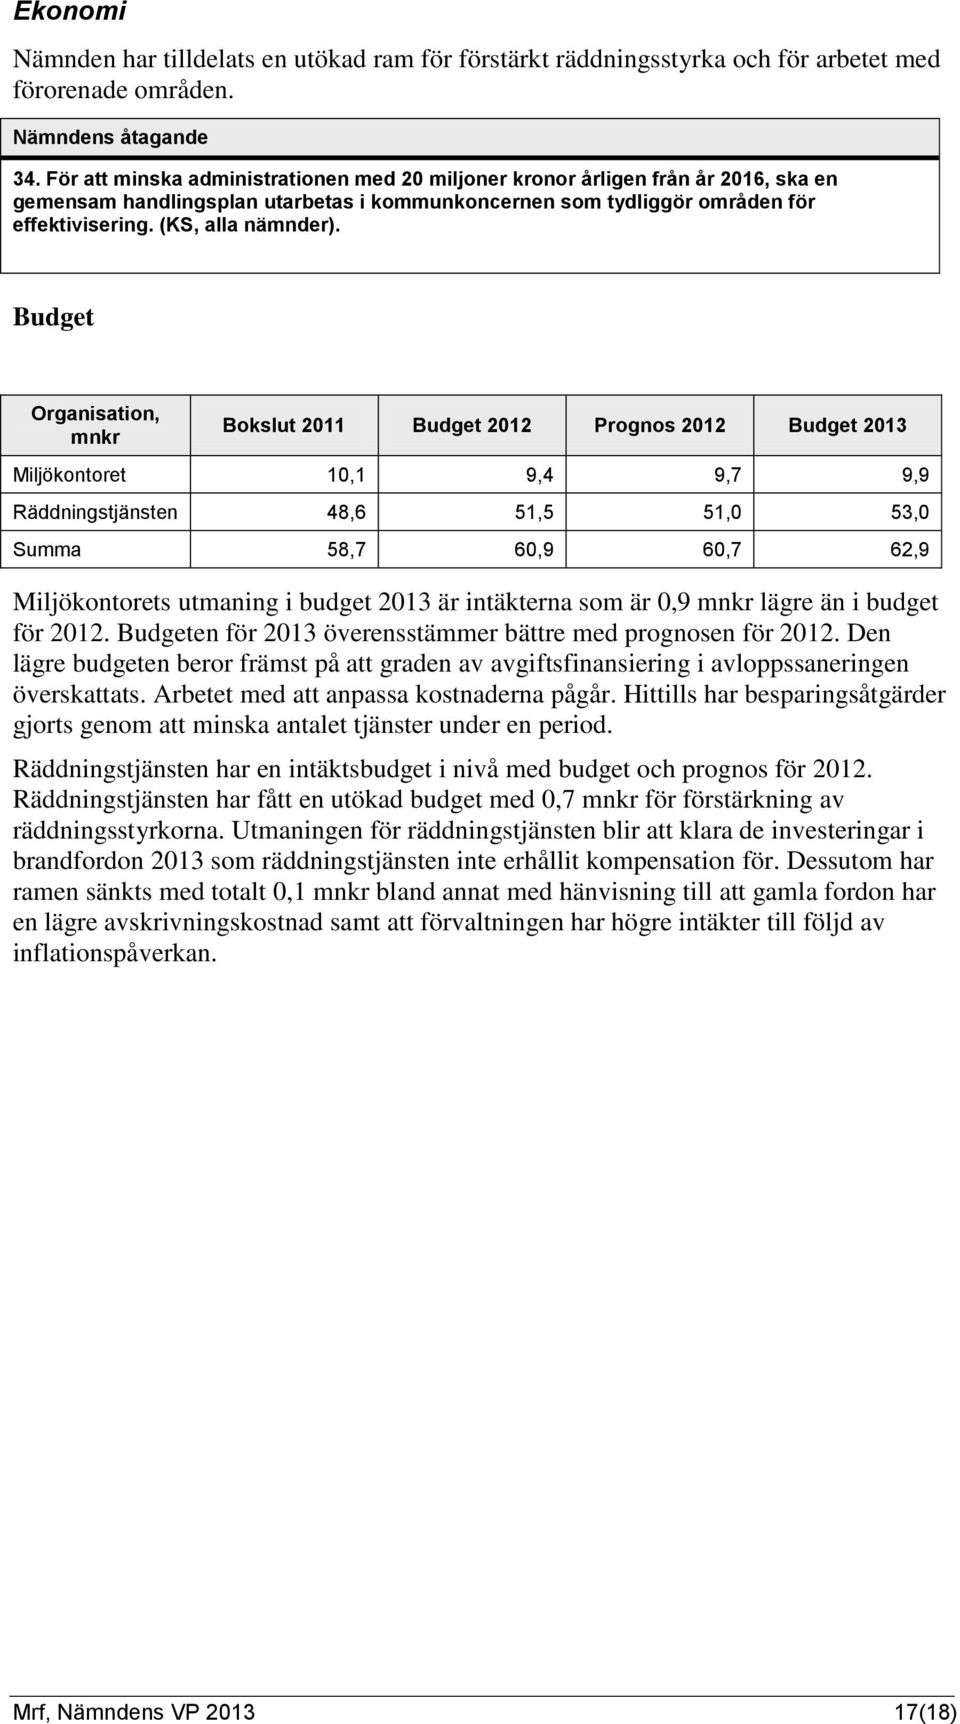 Budget Organisation, mnkr Bokslut 2011 Budget 2012 Prognos 2012 Budget 2013 Miljökontoret 10,1 9,4 9,7 9,9 Räddningstjänsten 48,6 51,5 51,0 53,0 Summa 58,7 60,9 60,7 62,9 Miljökontorets utmaning i